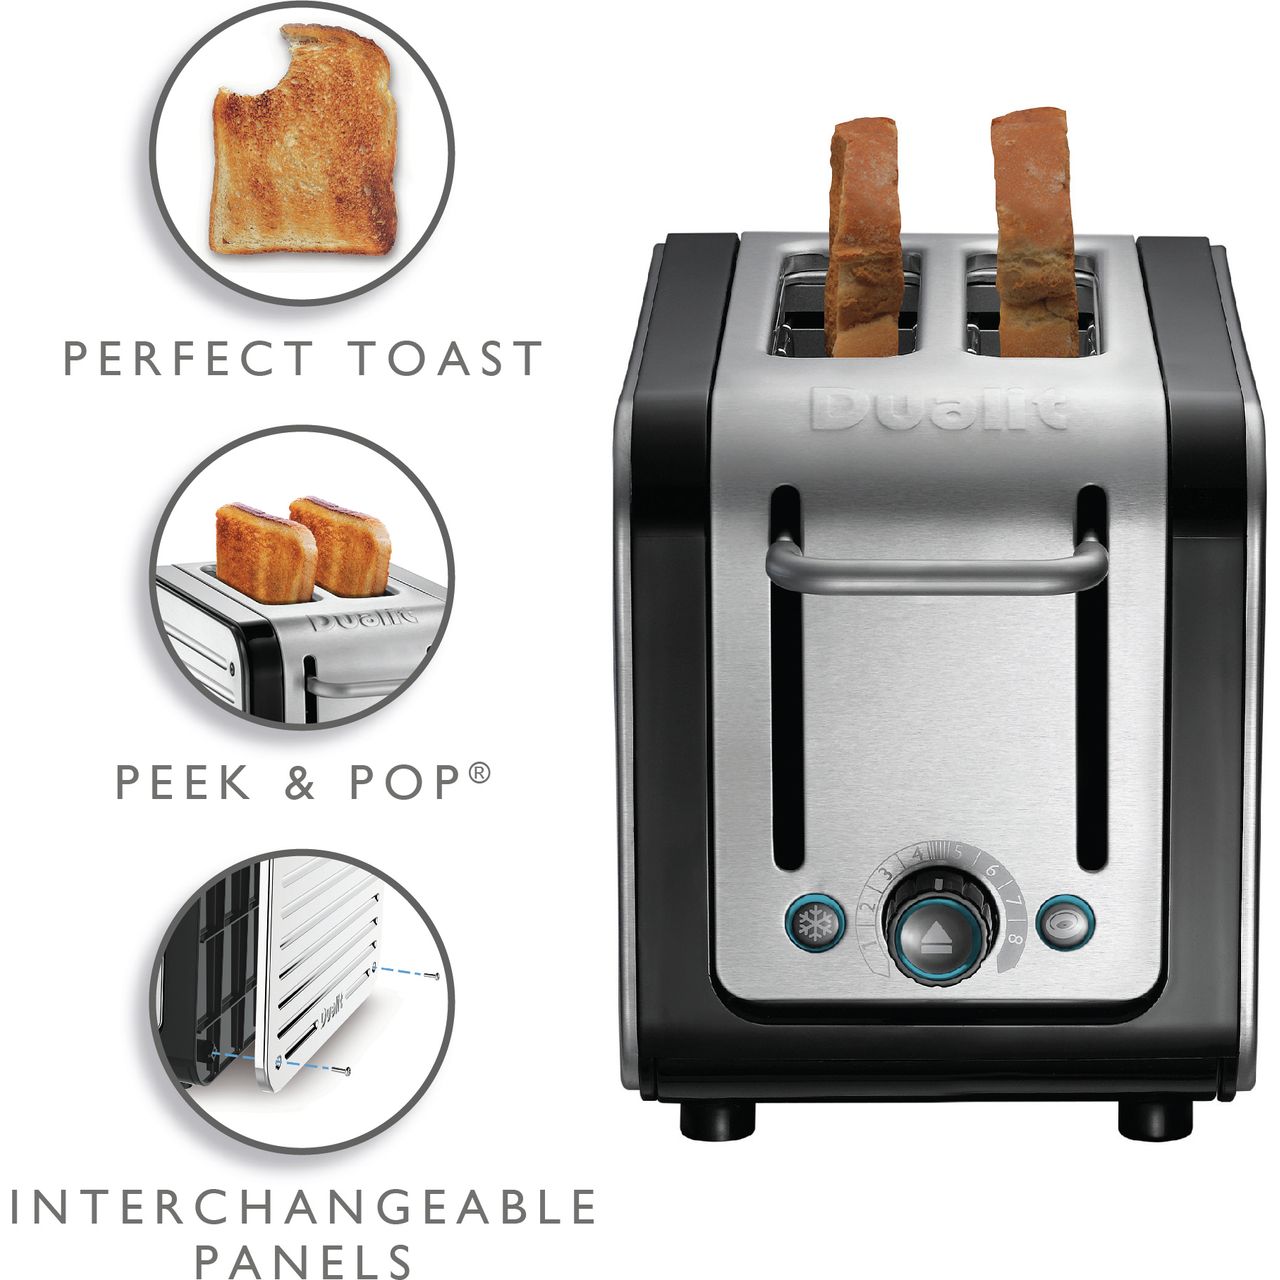 Dualit Studio 2 Slice Toaster — Fast, Stylish, Affordable